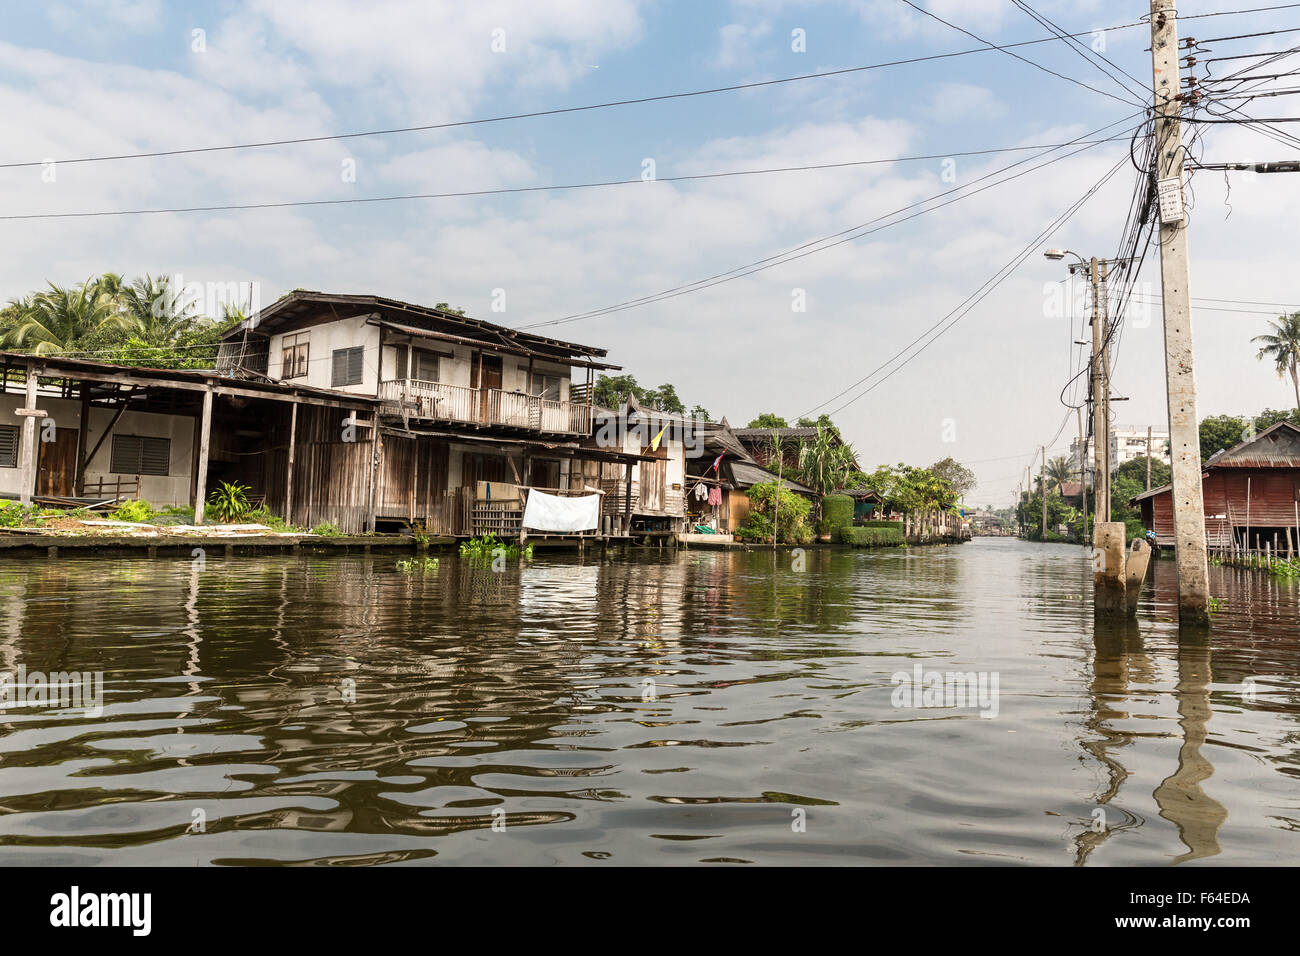 Les maisons faites de matériaux récupérés sur canal (Thaïlande) Banque D'Images